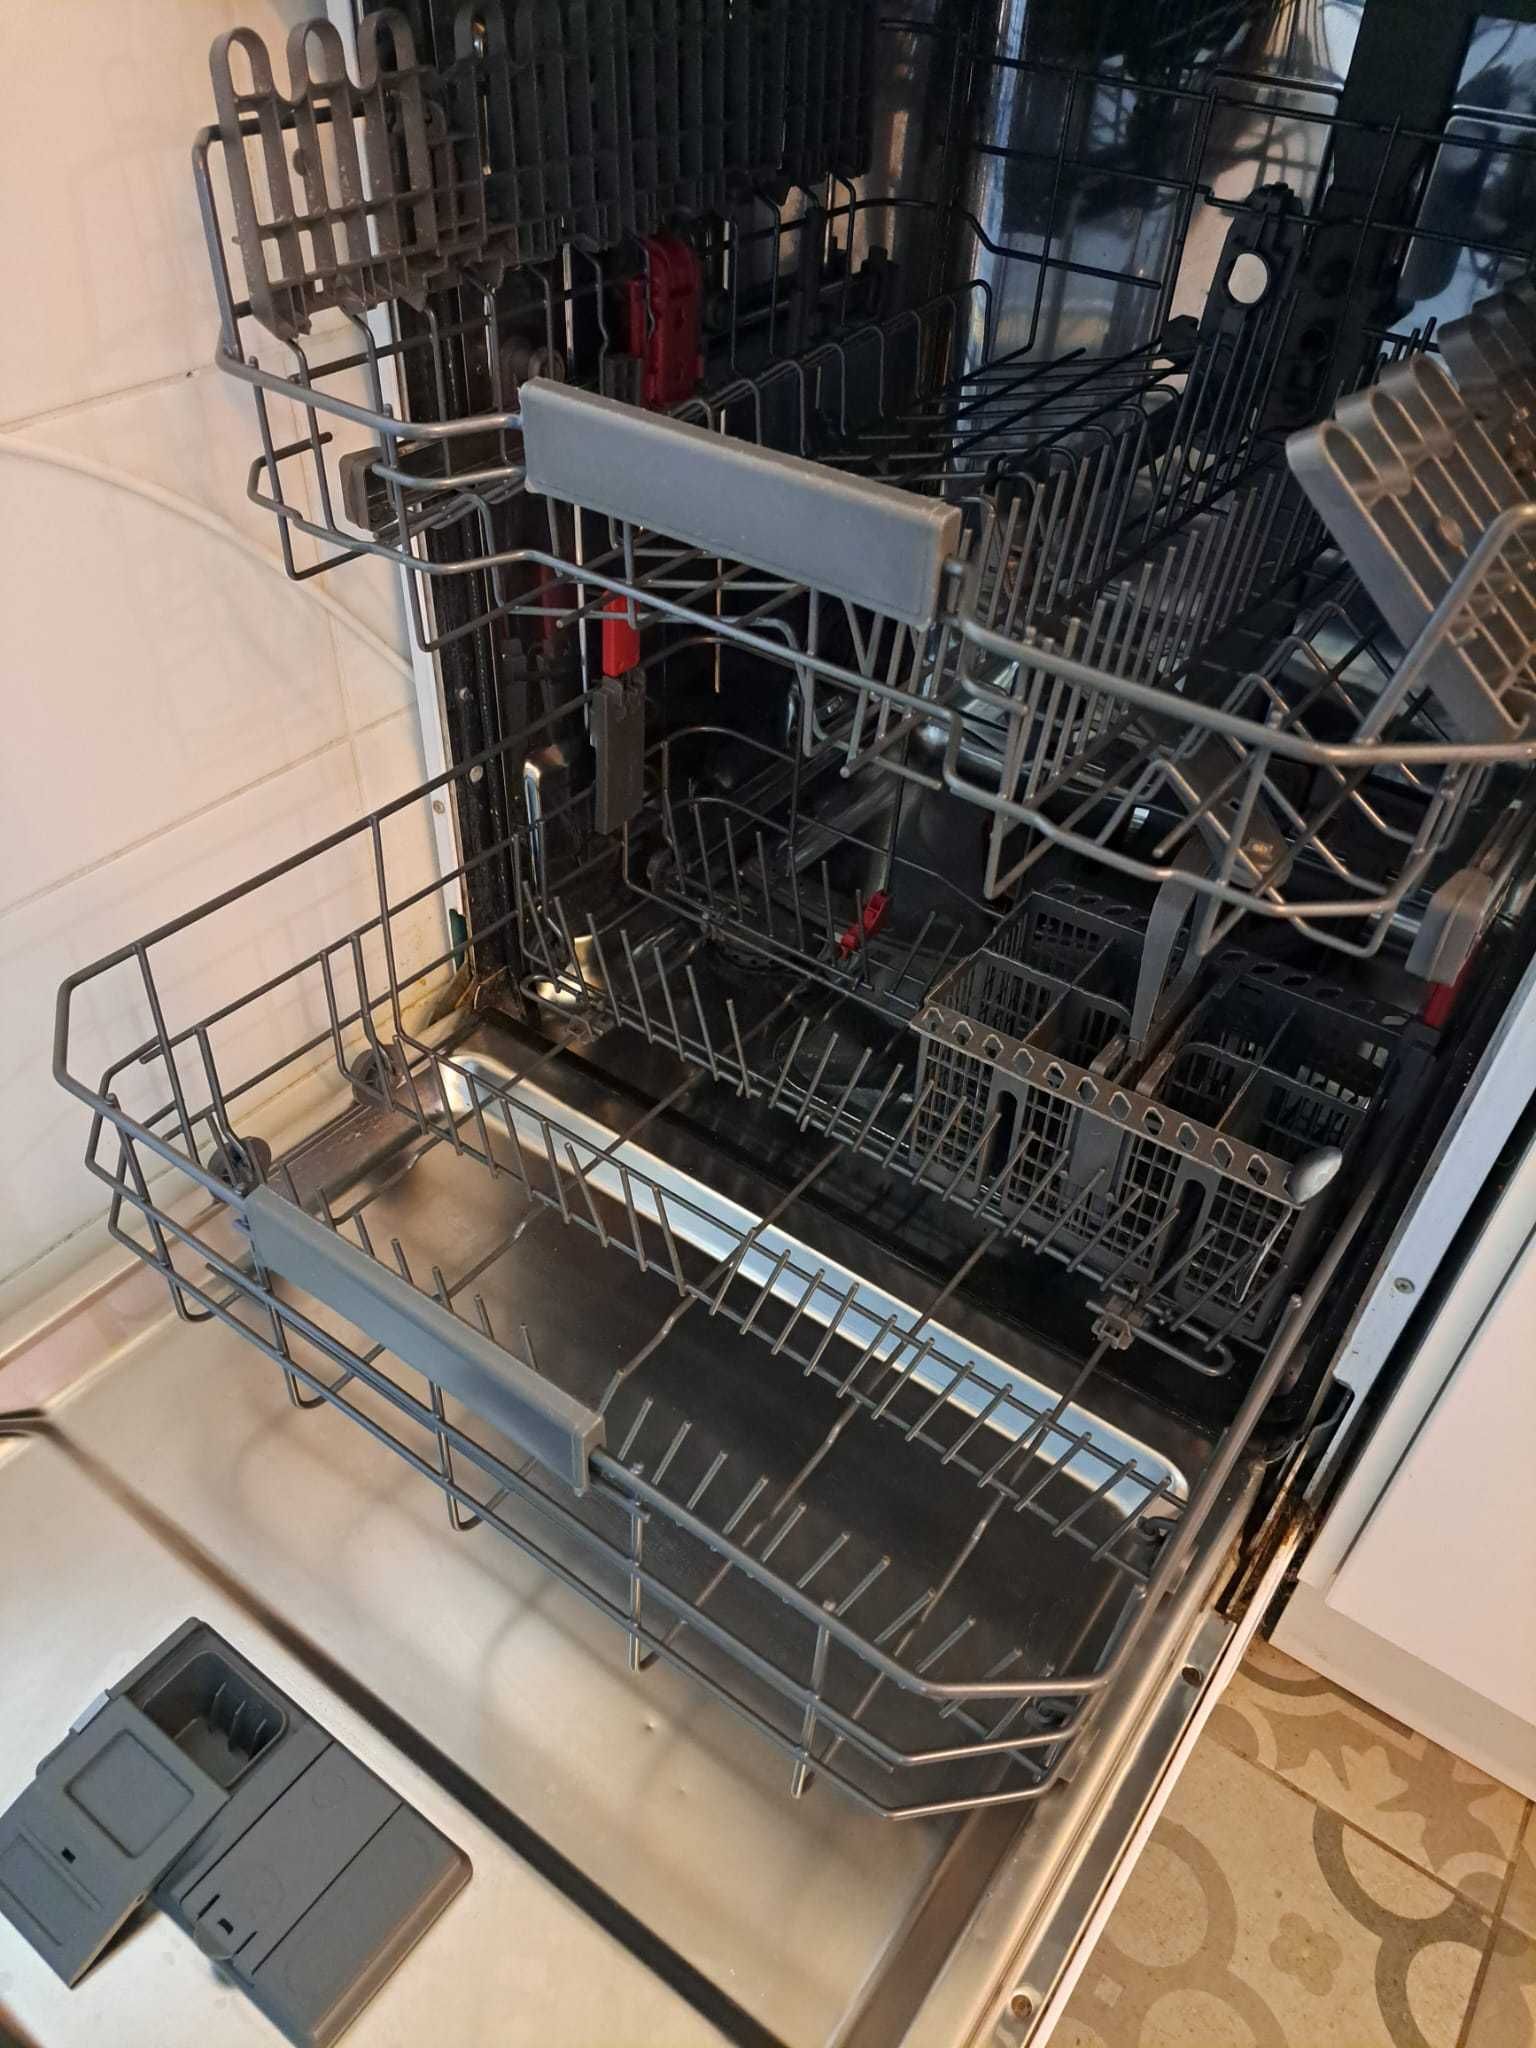 Máquina de lavar loiça Whirlpool PowerClean em ÓTIMO ESTADO